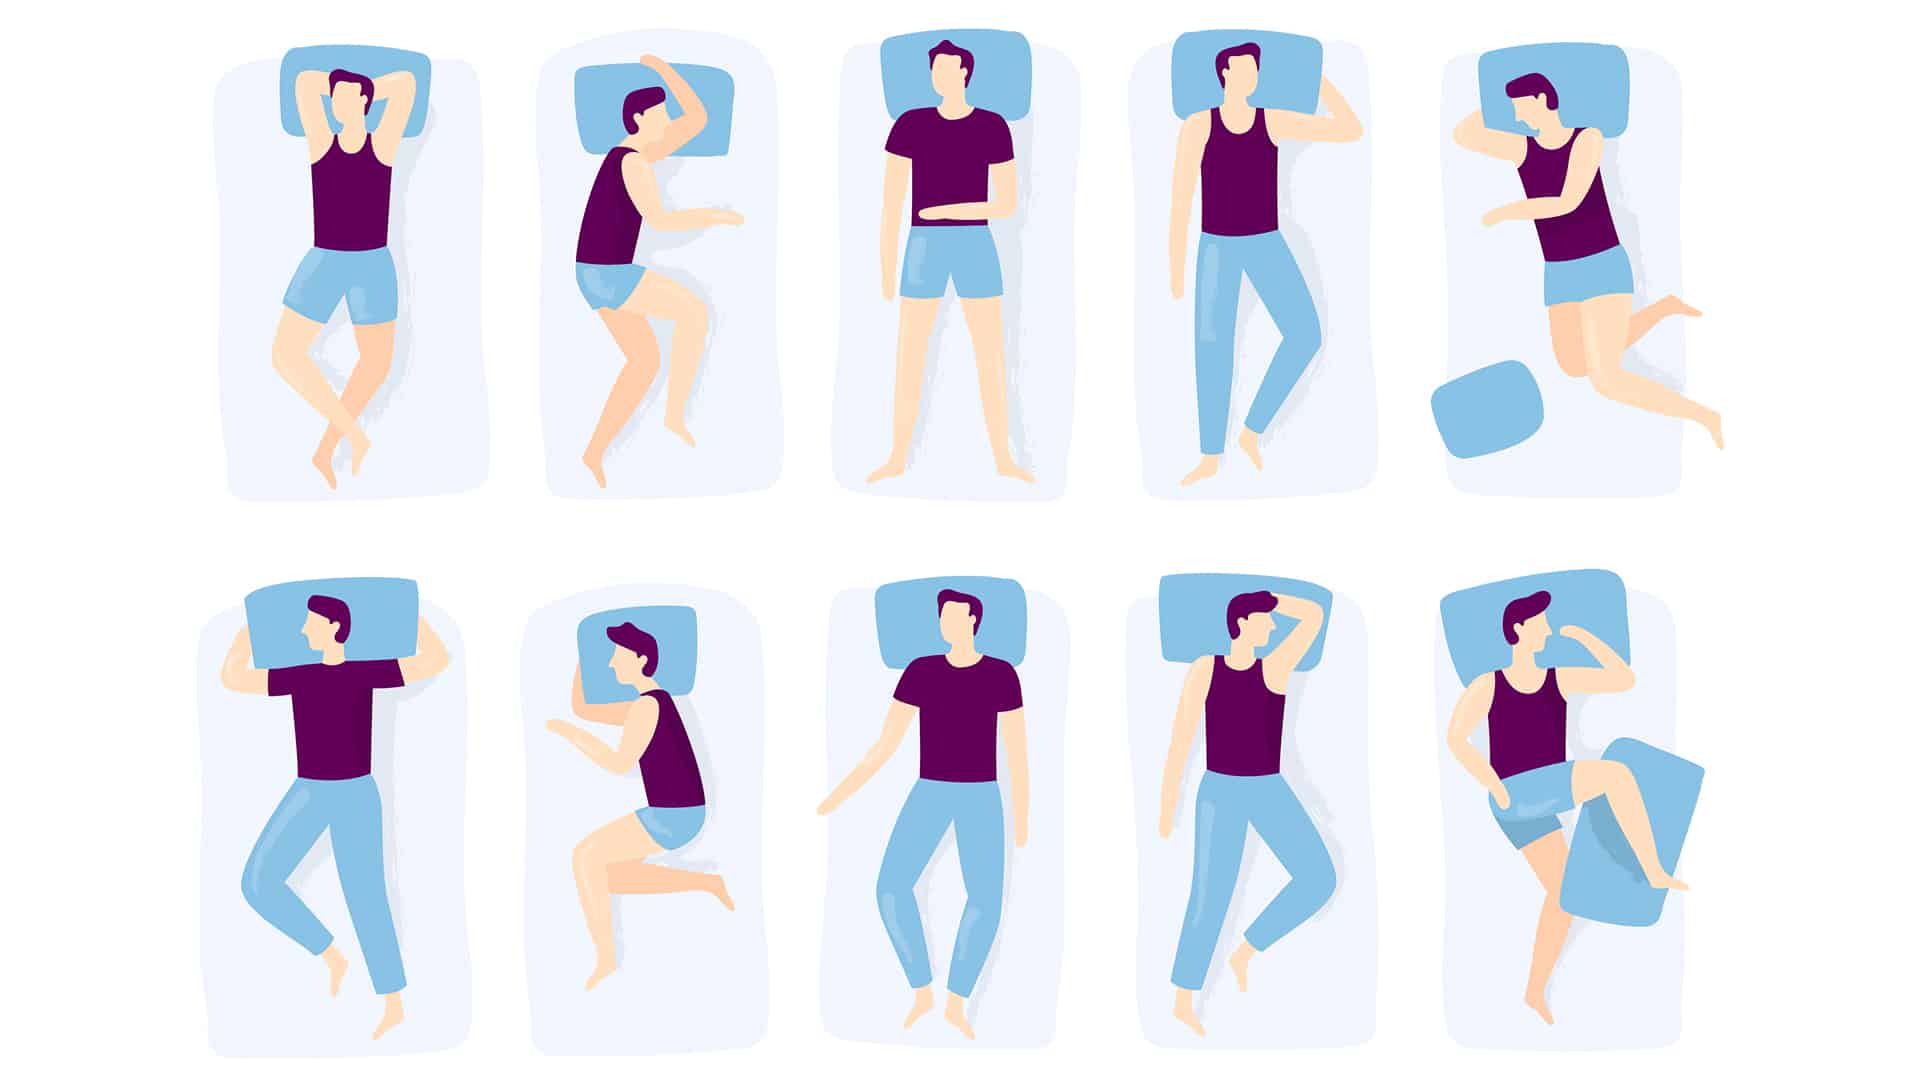 Meglio dormire sul fianco destro o sinistro per la salute? Tutti i falsi miti e gli “errori” più comuni